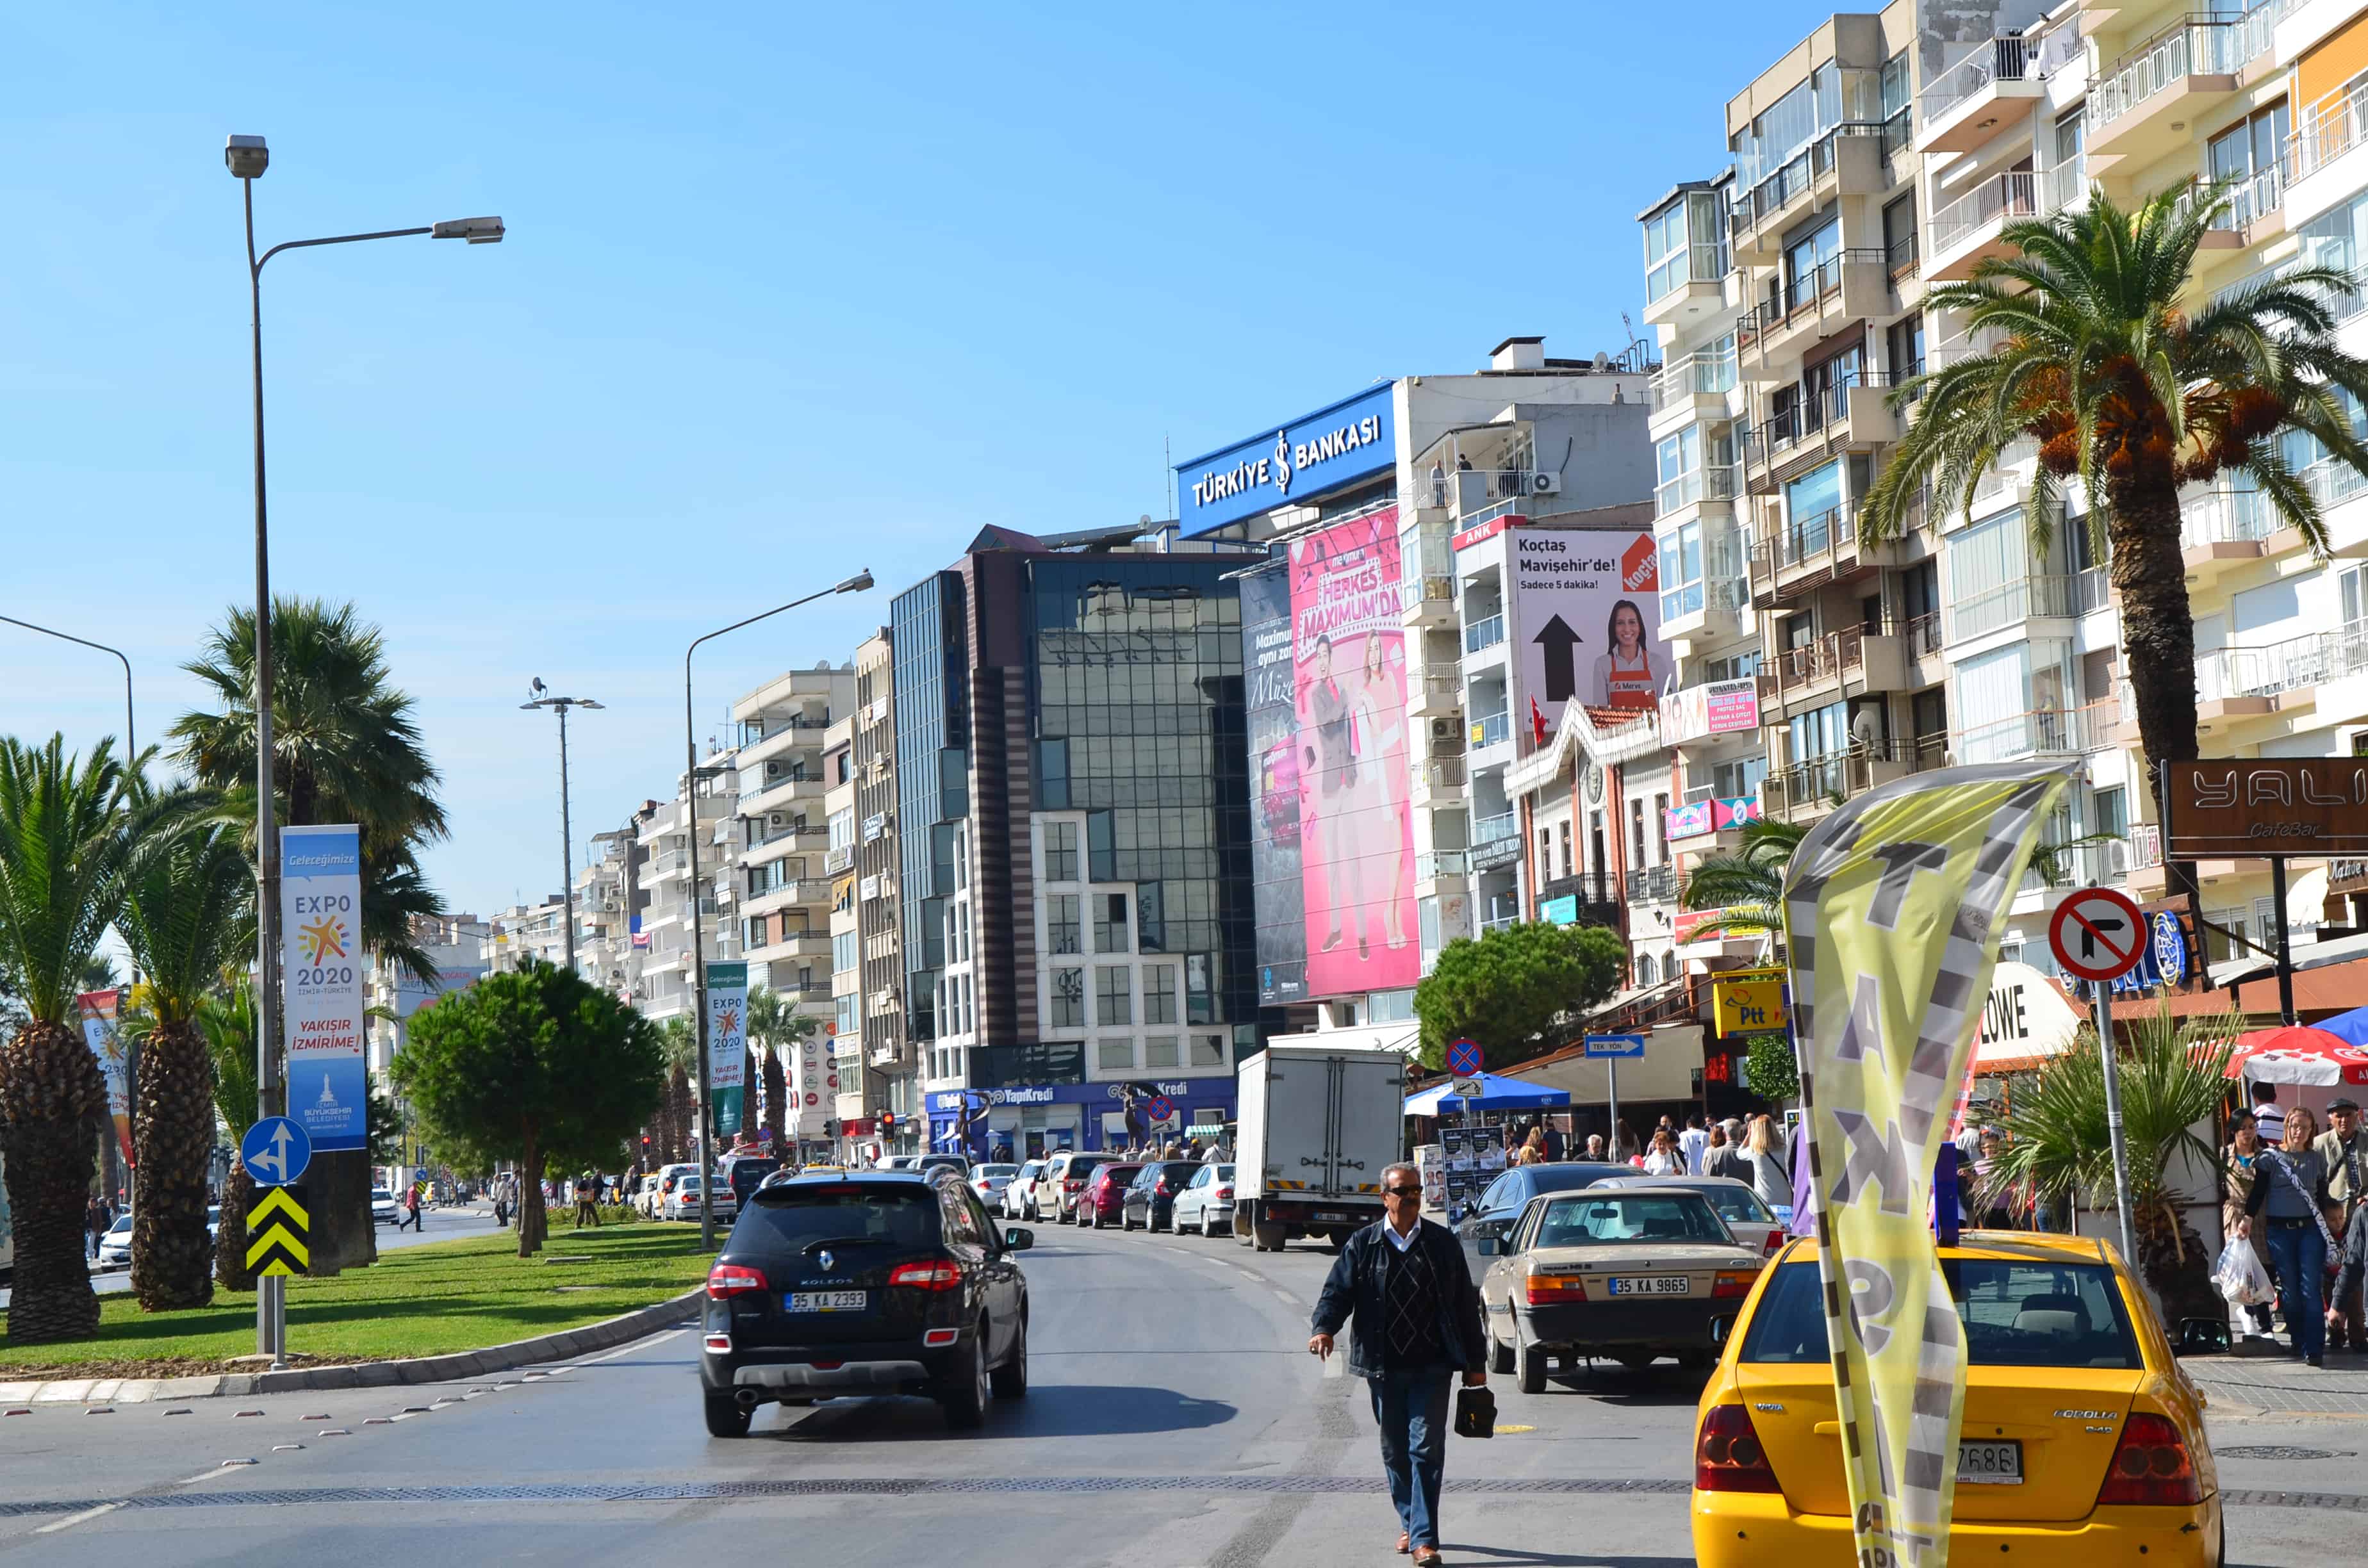 Cemal Gürsel Street in Karşıyaka, Izmir, Turkey